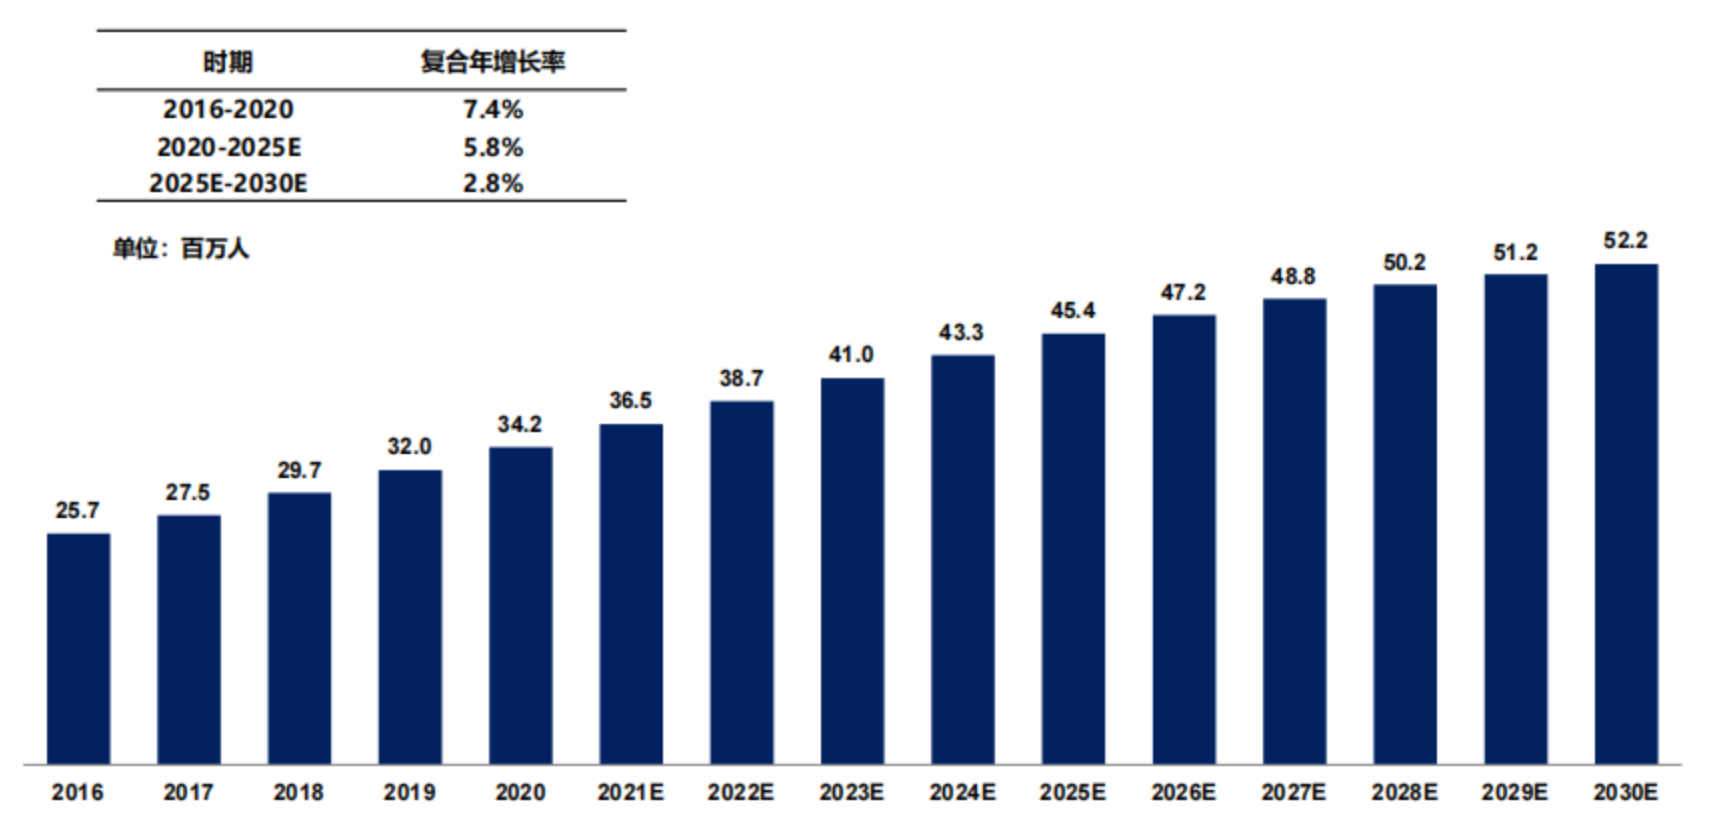 中国痛风患病人数，2016-2030E